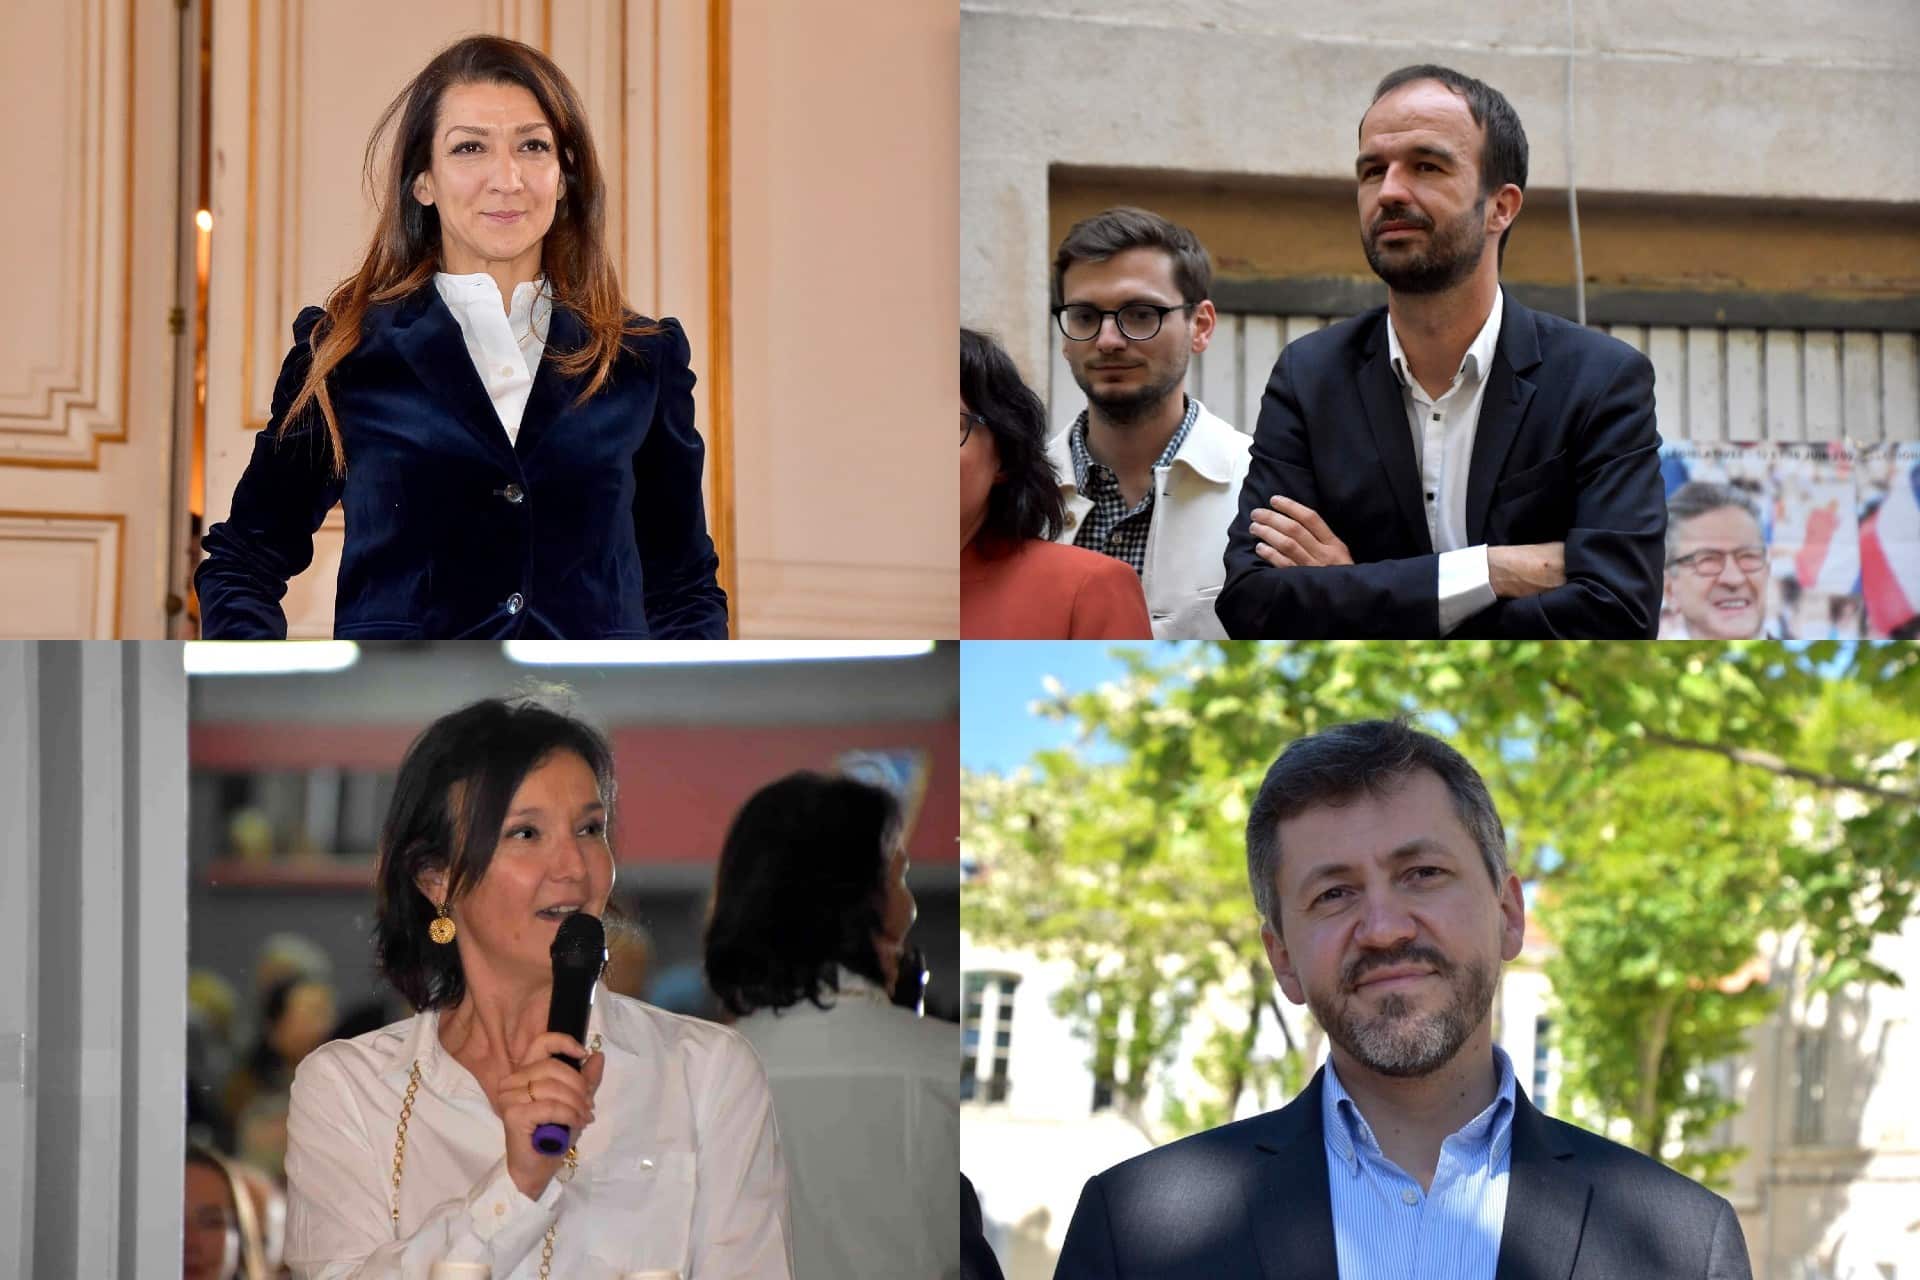 candidats législatives, Qui sont les candidats aux élections législatives à Marseille et dans les Bouches-du-Rhône ?, Made in Marseille